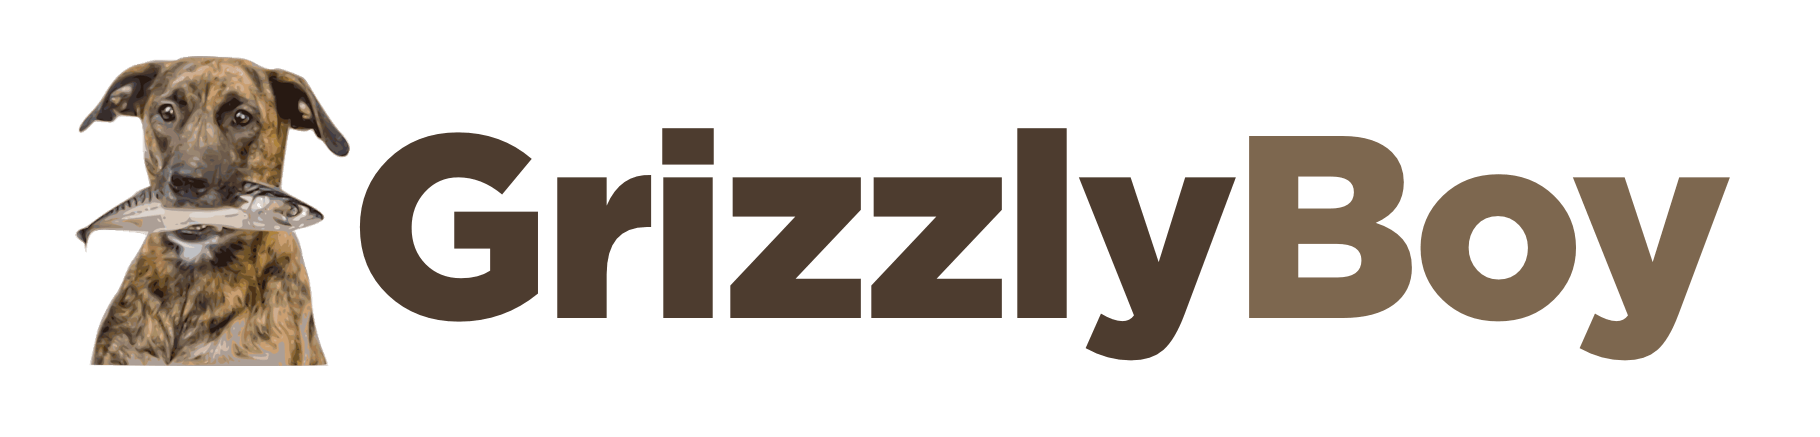 GrizzlyBoy™ – Grizzly Boy